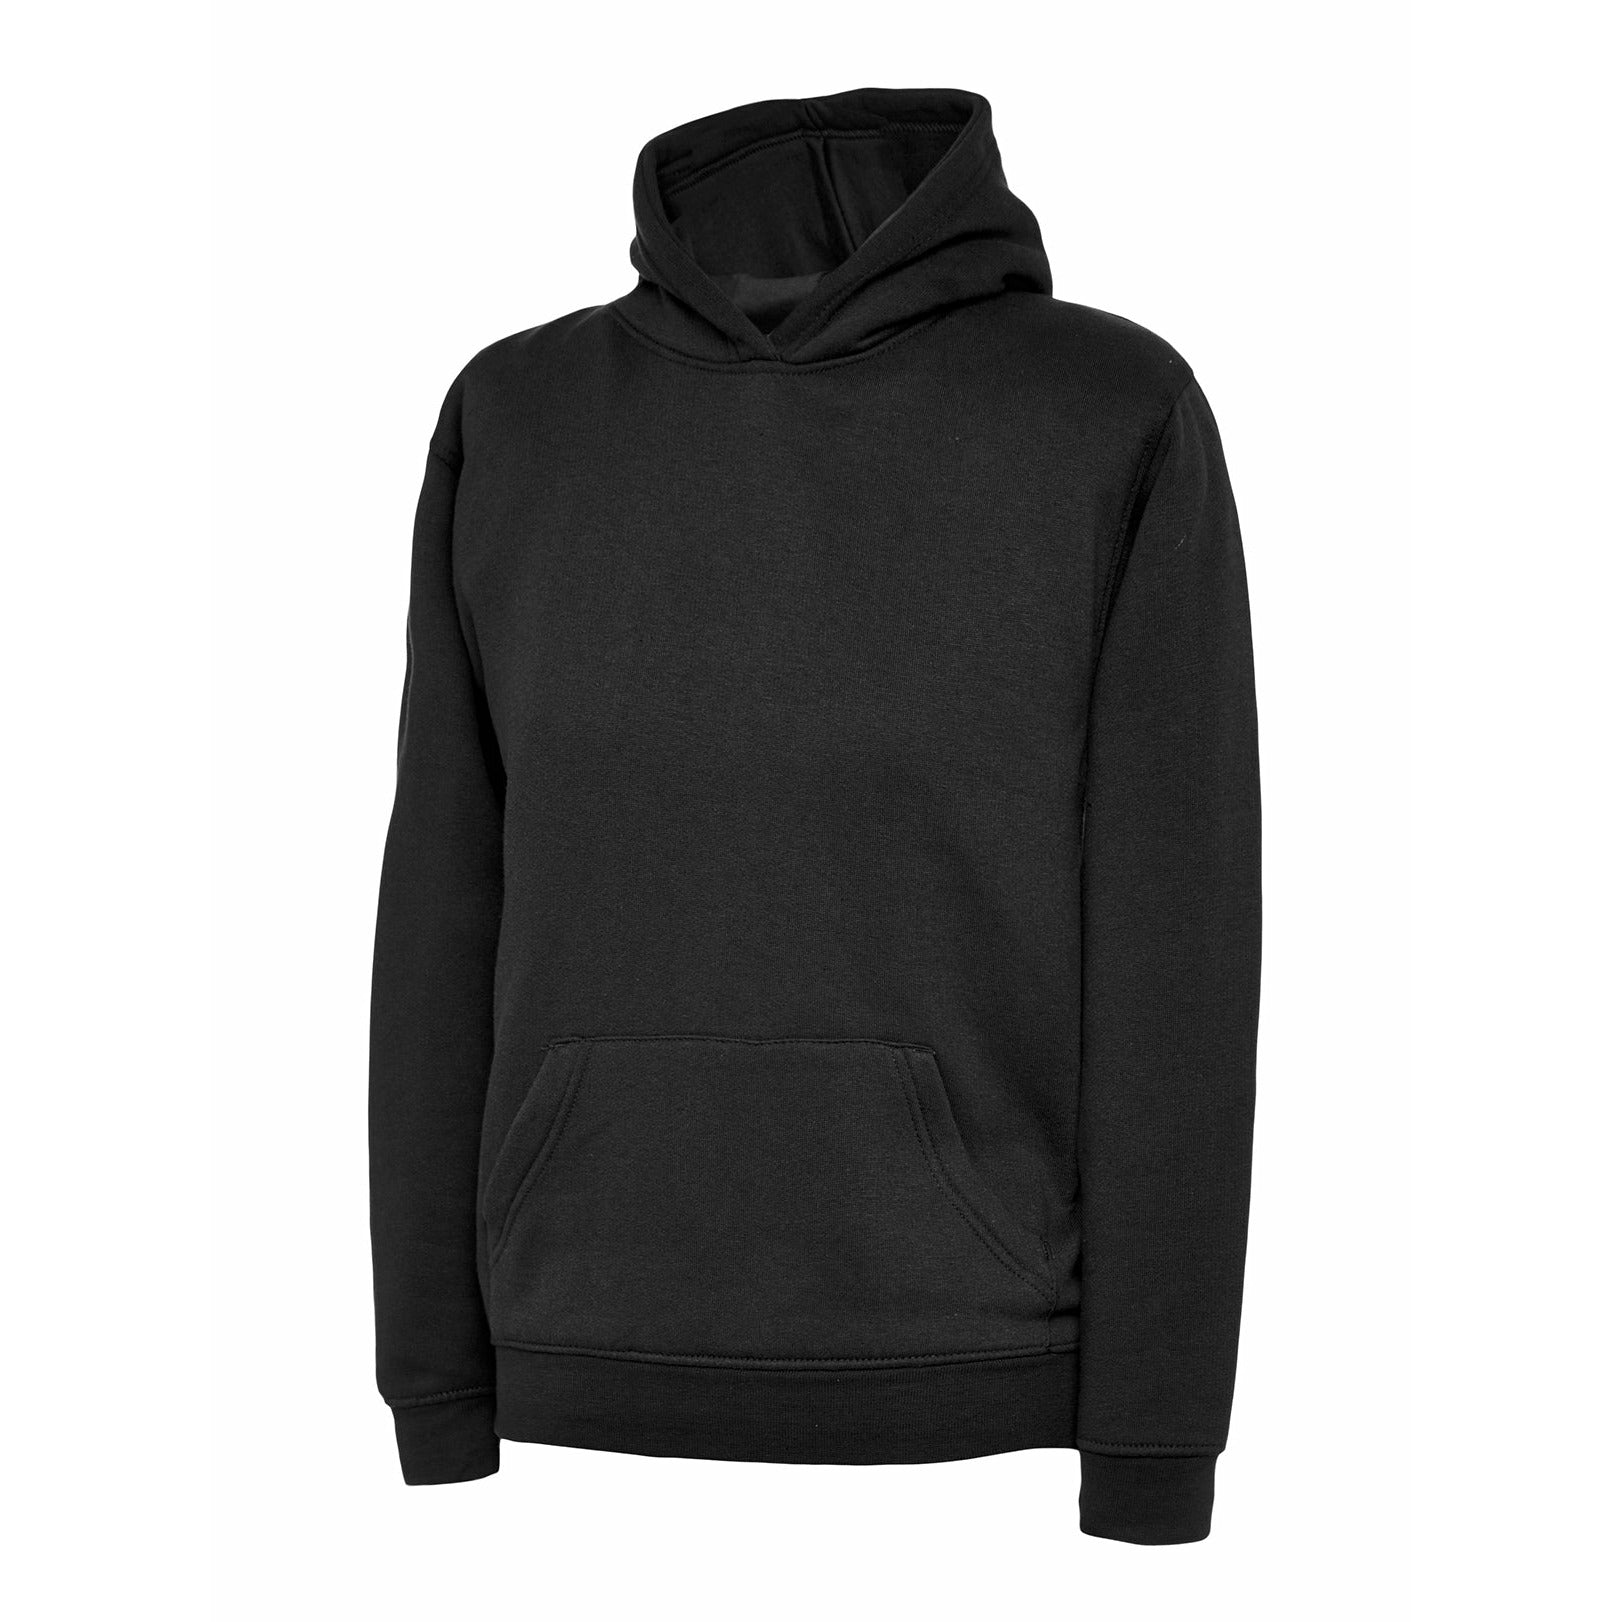 The UX Children’s Hooded Sweatshirt - Black